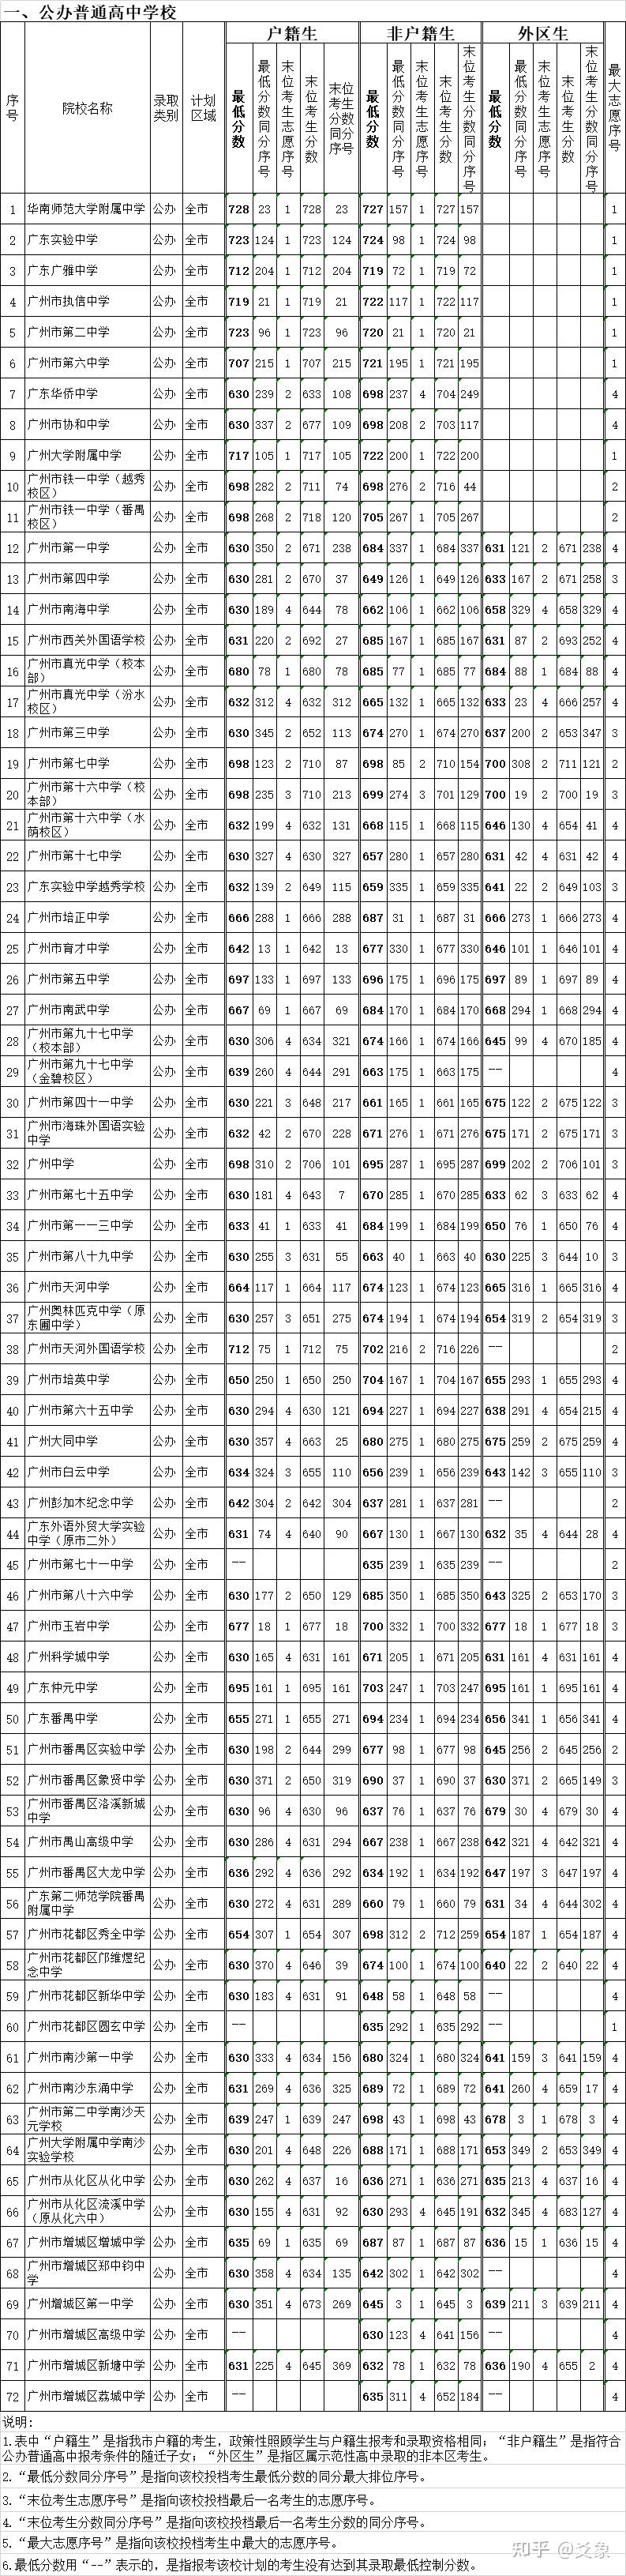 2020广州中考各批次录取分数线汇总